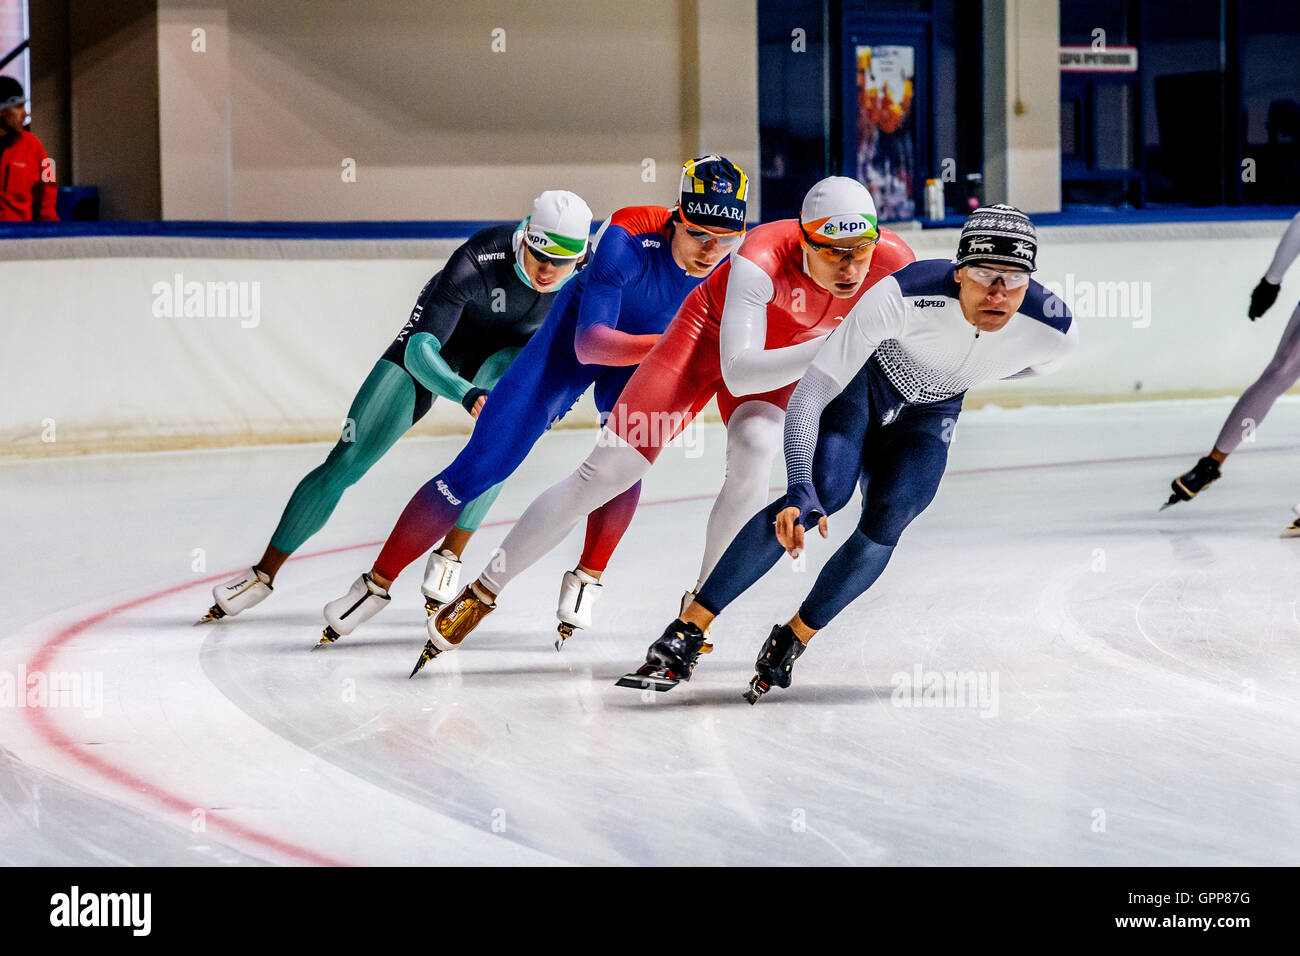 Groupe d'hommes aux patineurs de warm-up en été Tasse en patinage de vitesse Banque D'Images